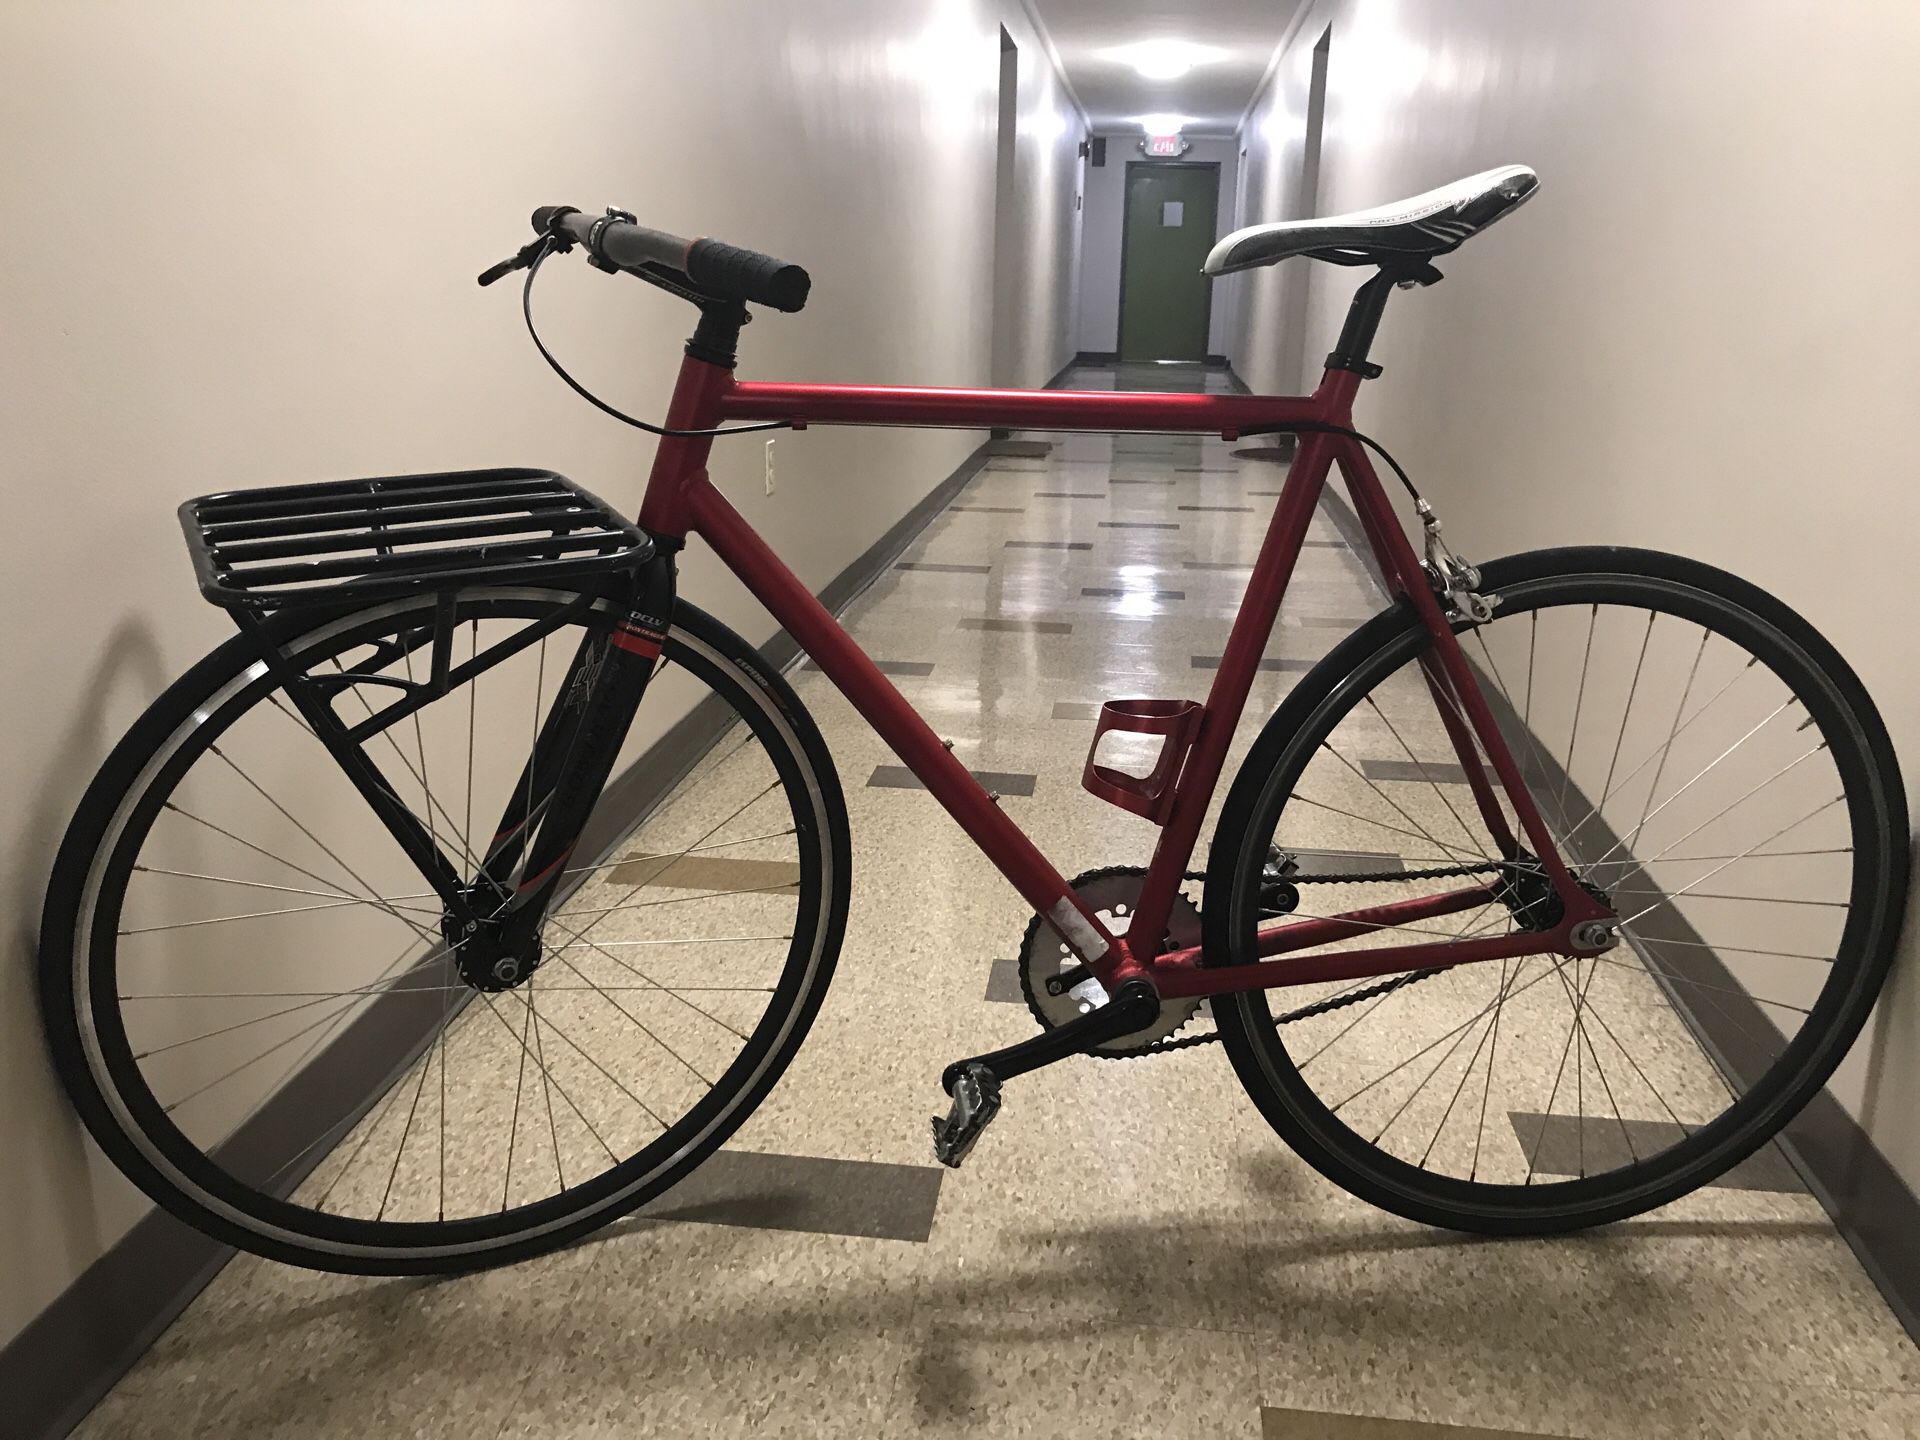 Fixed gear bike / fixie